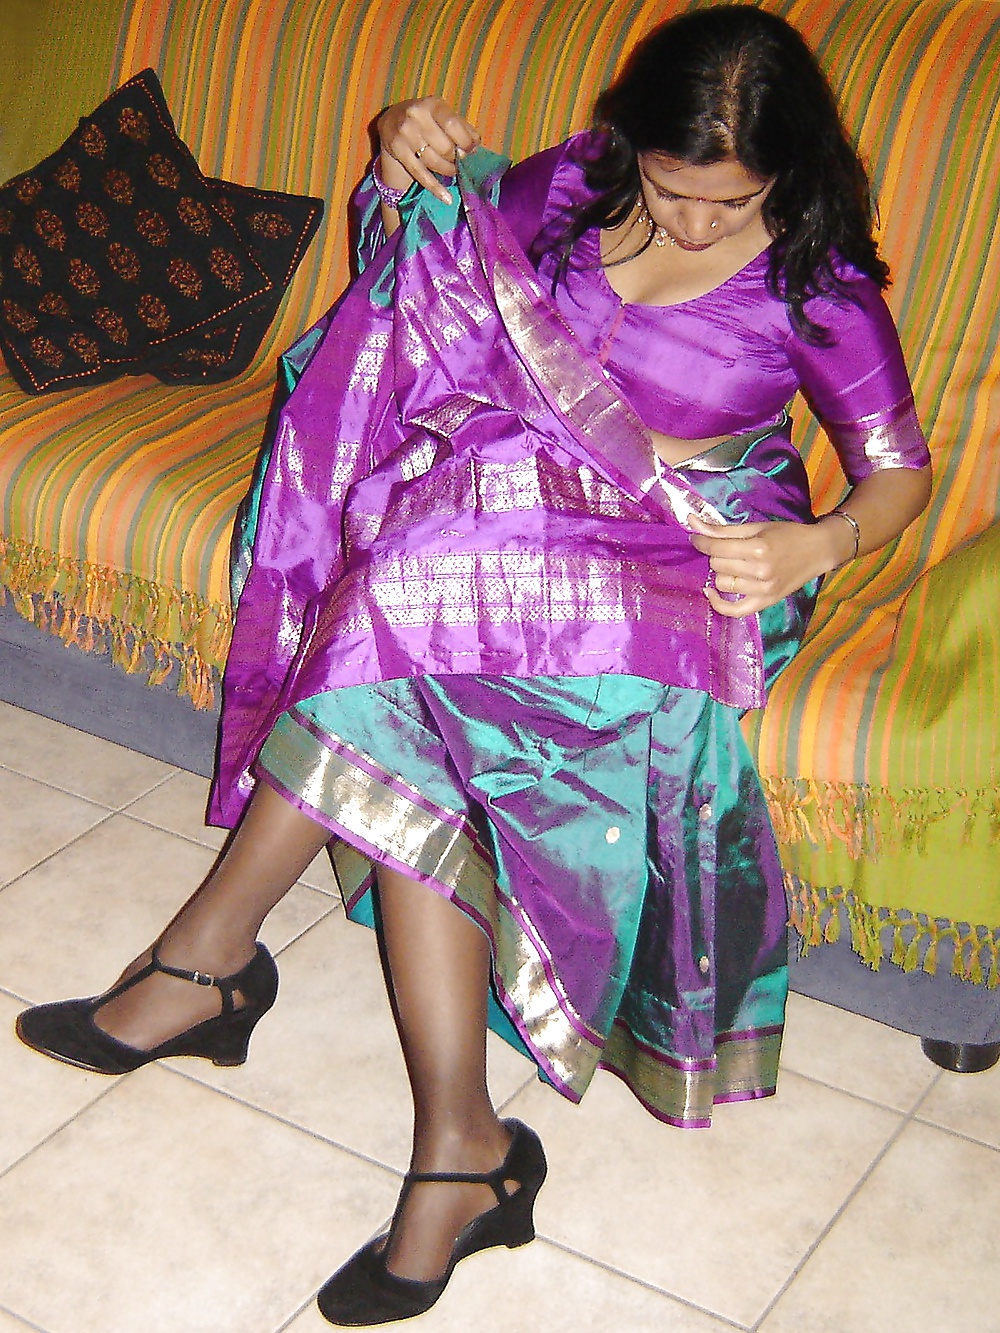 MILF Indien Desi Aime Me Taquiner Avec Un Sari De Soie #26337702